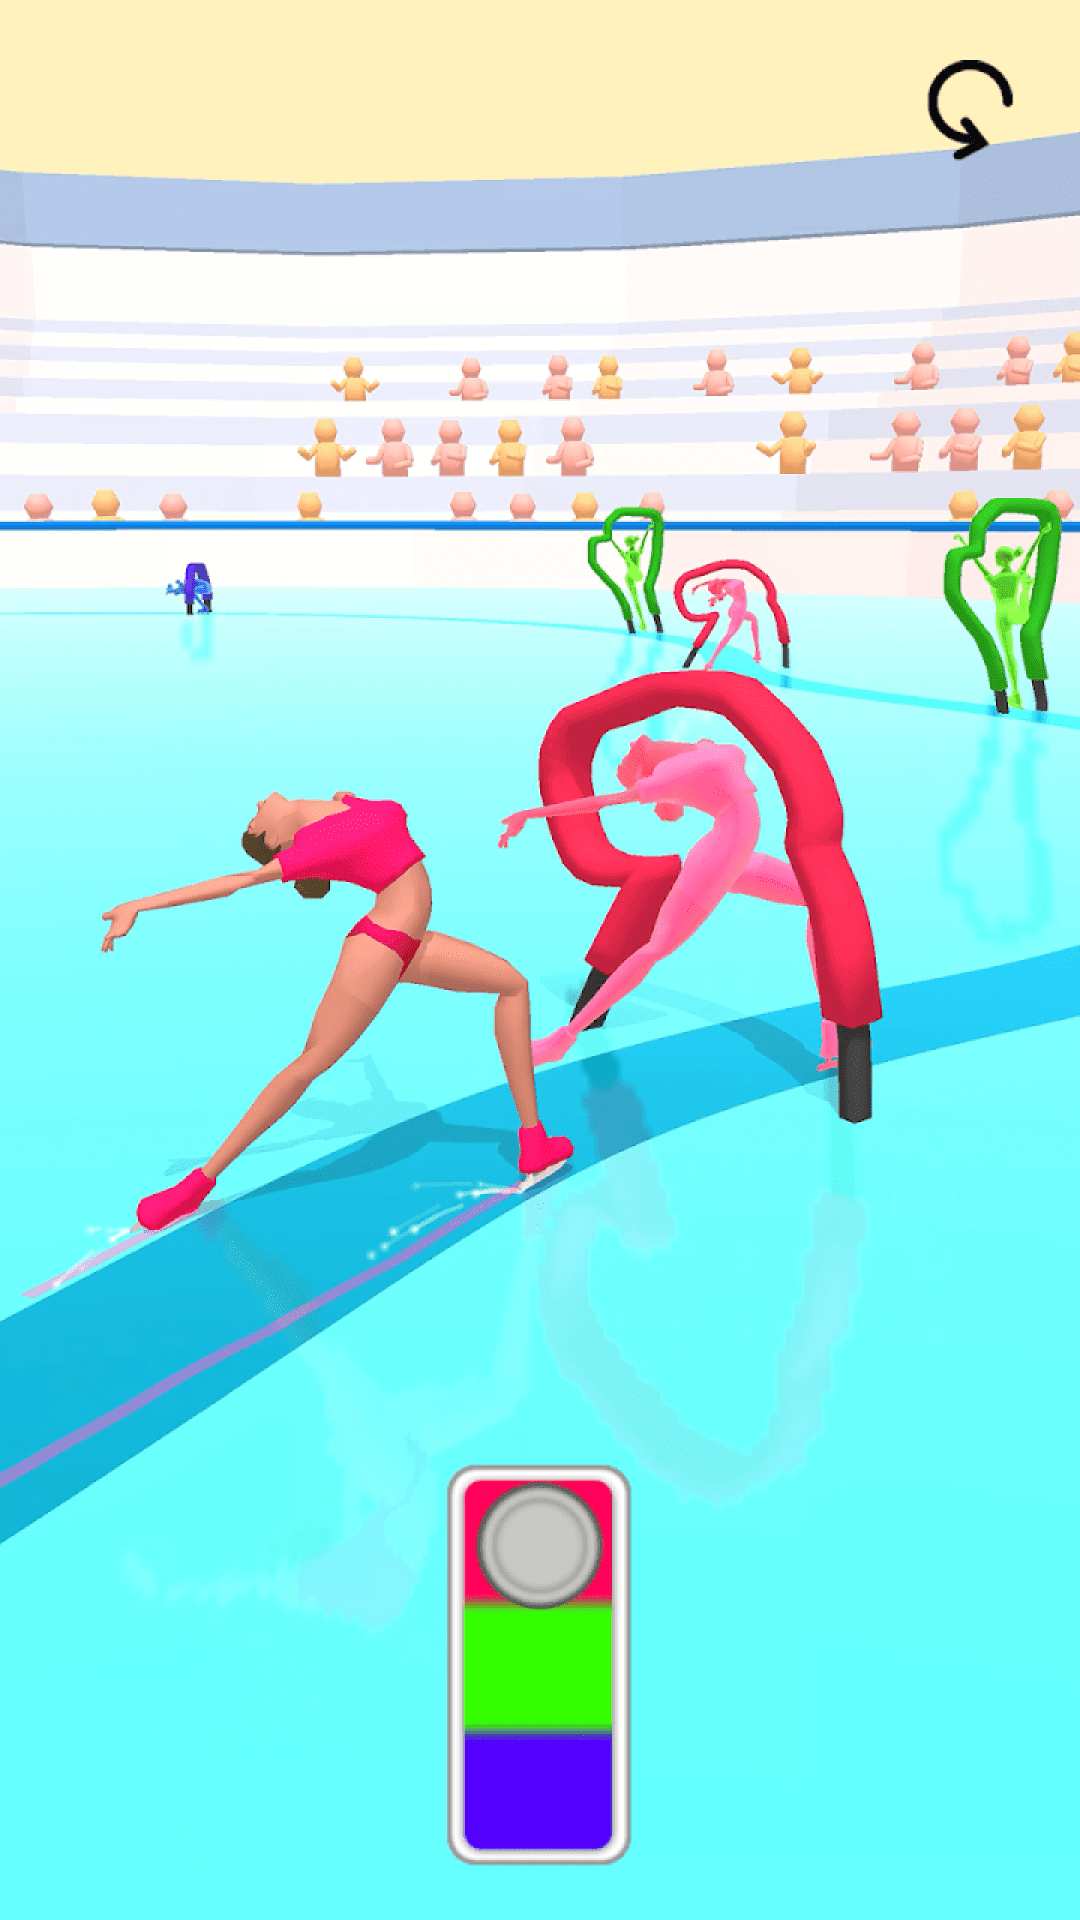 花式滑冰芭蕾舞(1)